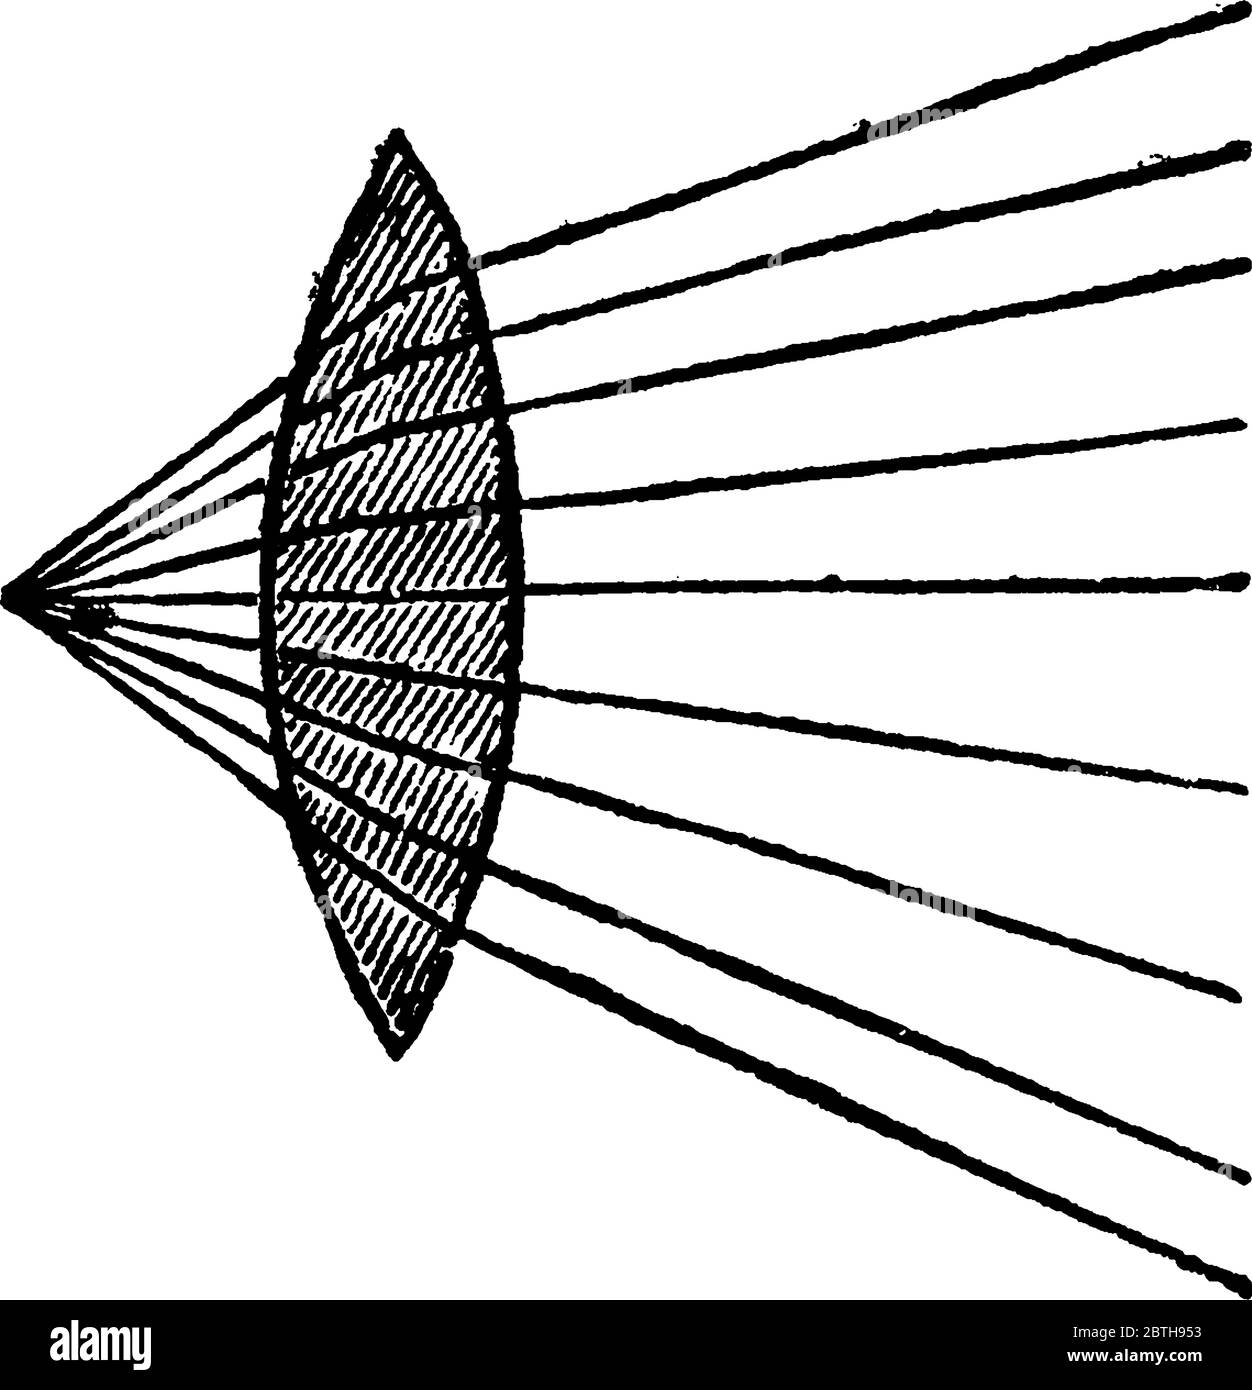 La figure montre le crayon de rayons convergents qui sont convergents lorsqu'ils passent à travers le lensand amené à un foyer plus près de l'objectif, en proportion Illustration de Vecteur